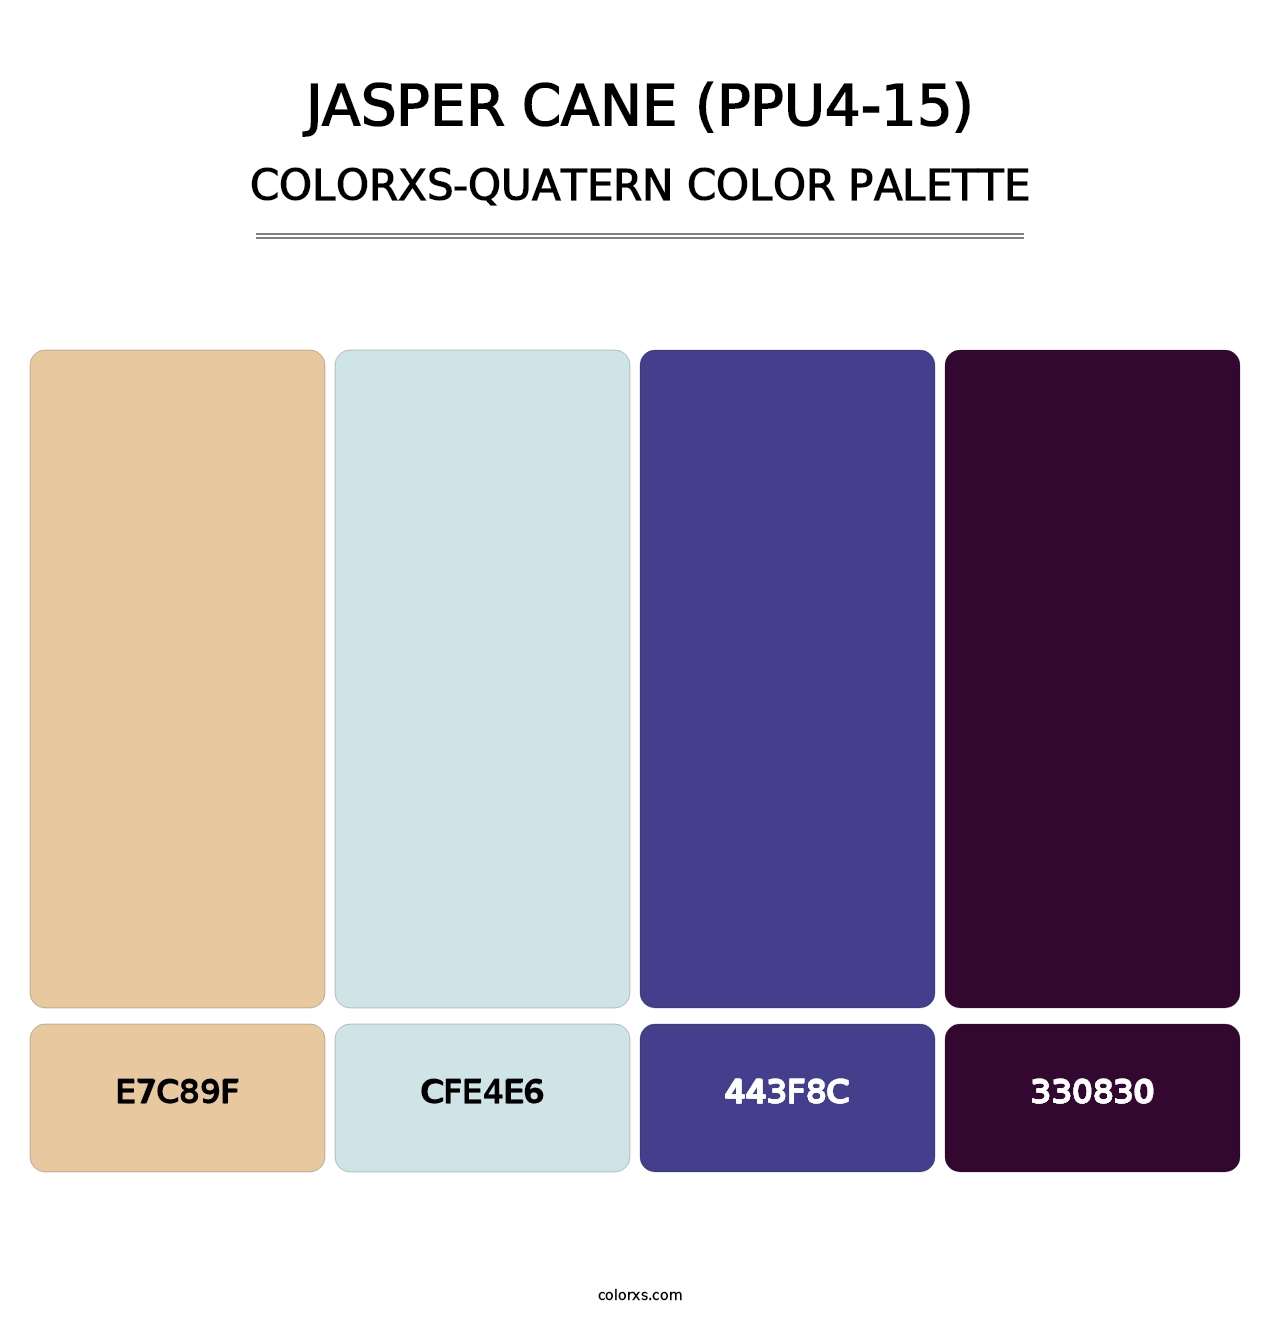 Jasper Cane (PPU4-15) - Colorxs Quatern Palette